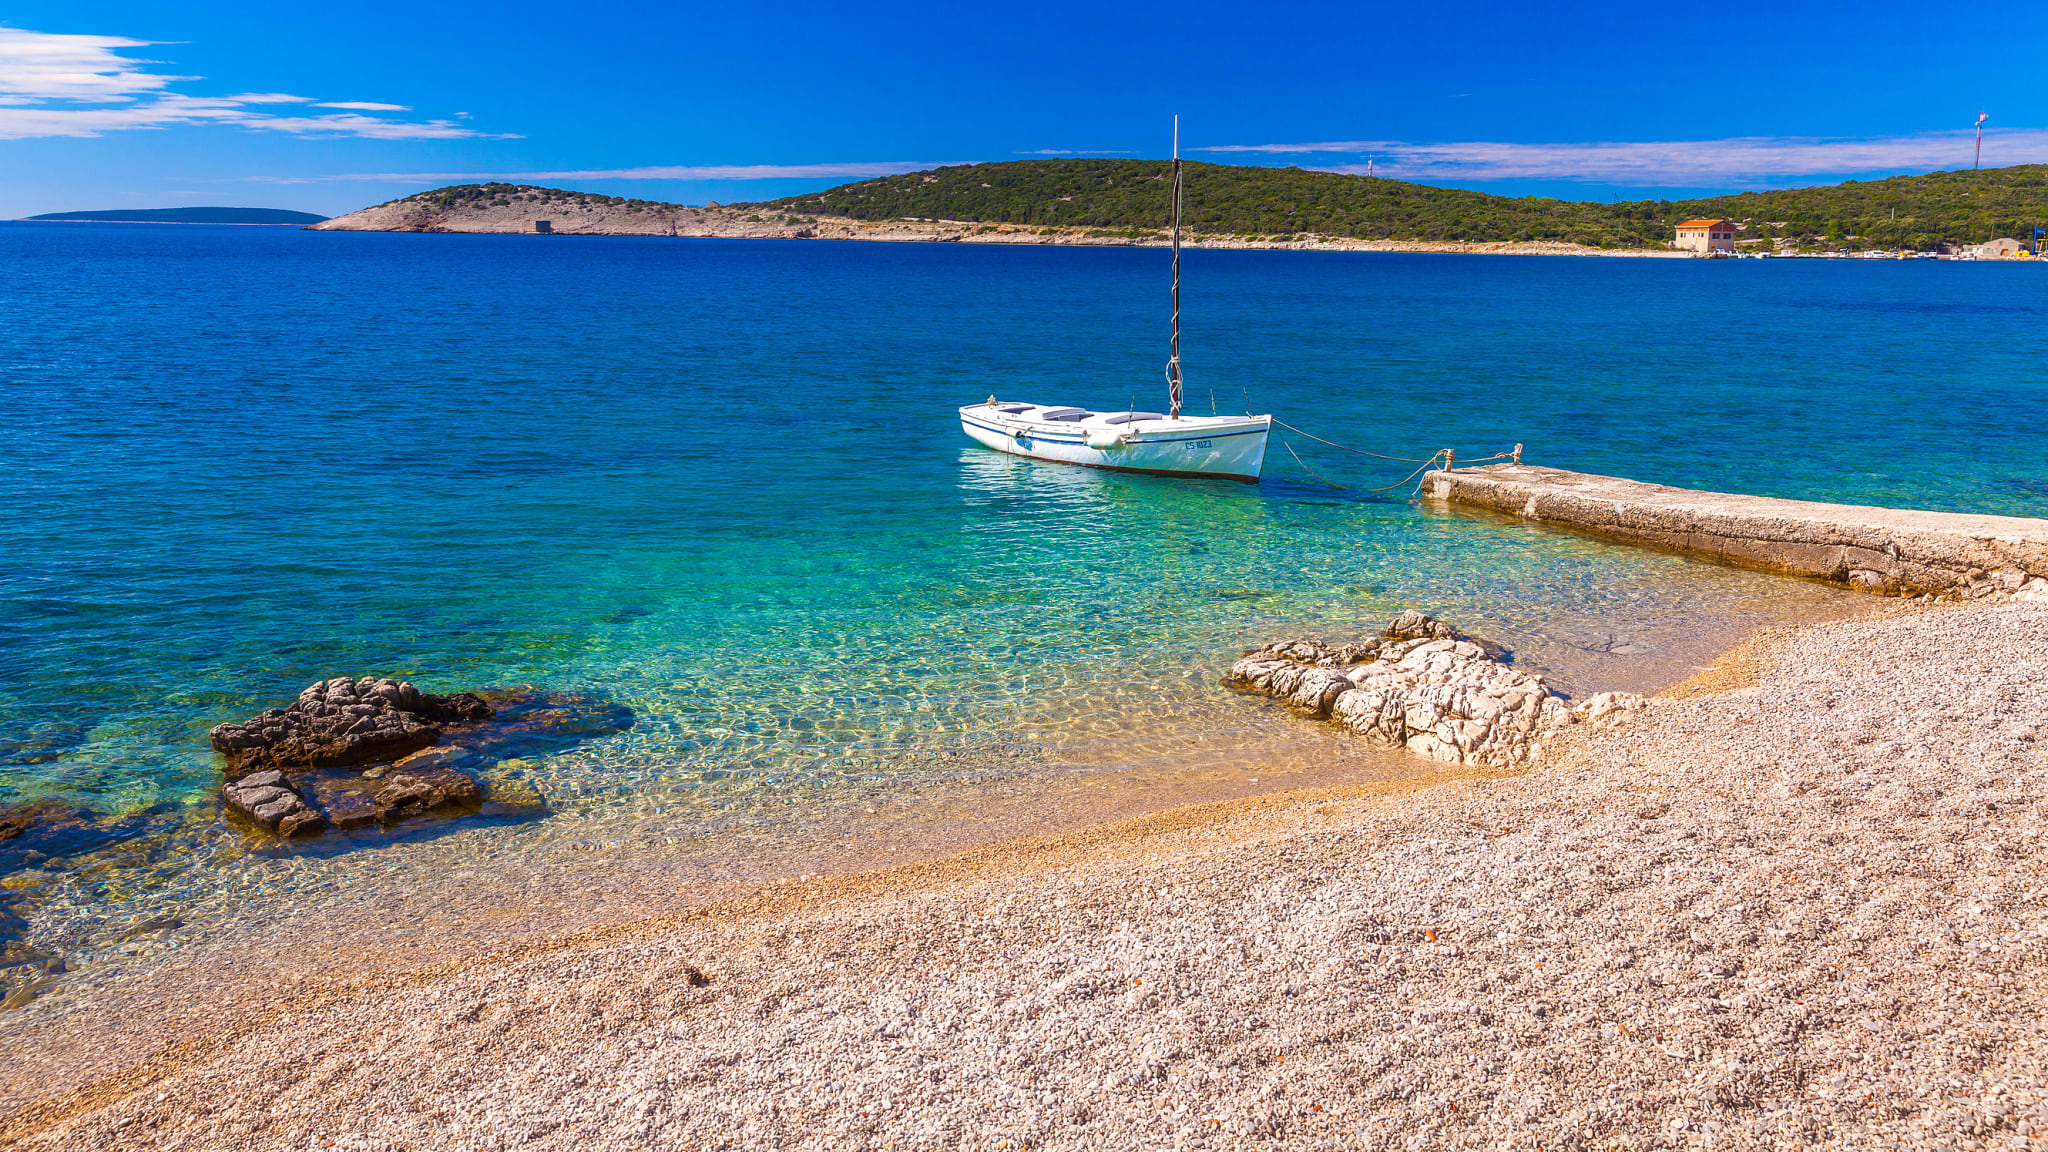 Schöner Strand im Ort Martinscica, Insel Cres, Kvarner Bucht, Kroatien ©Olimpio Fantuz/HUBER IMAGES